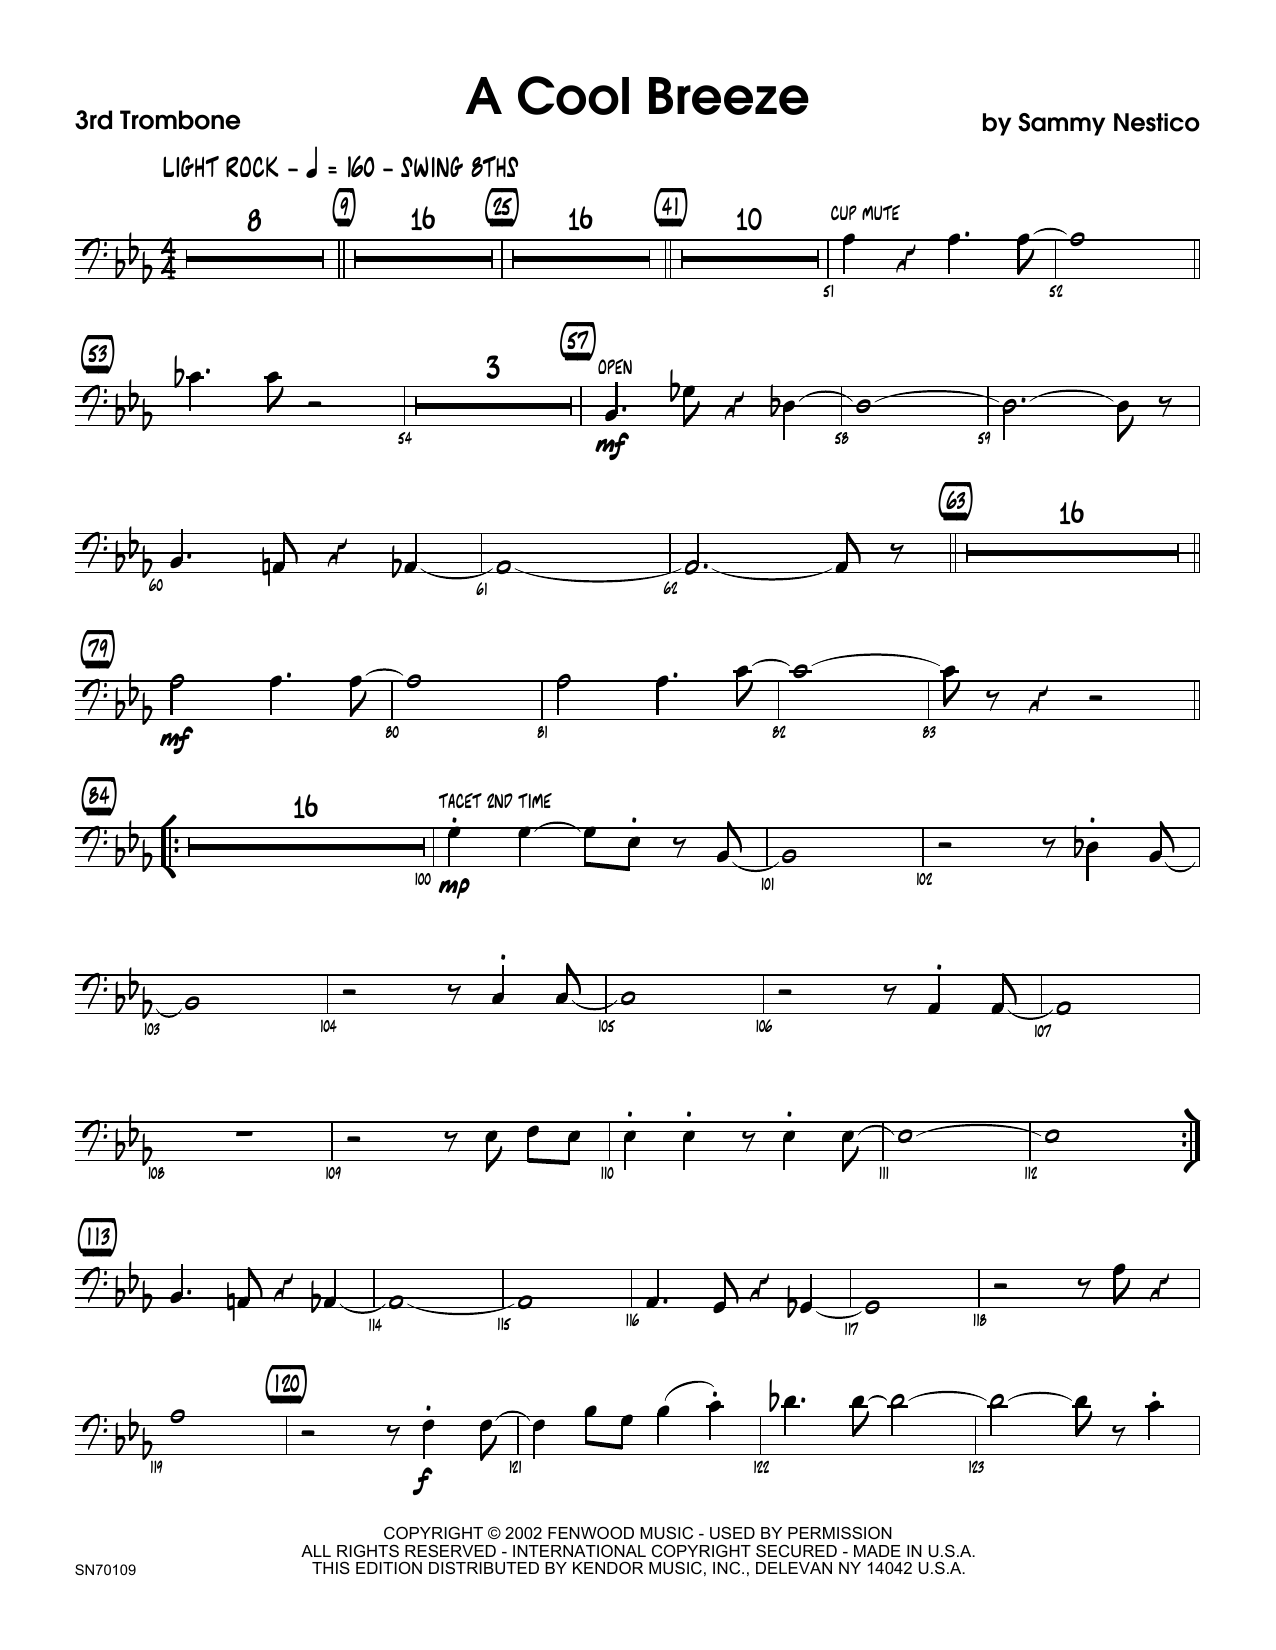 Download Sammy Nestico A Cool Breeze - 3rd Trombone Sheet Music